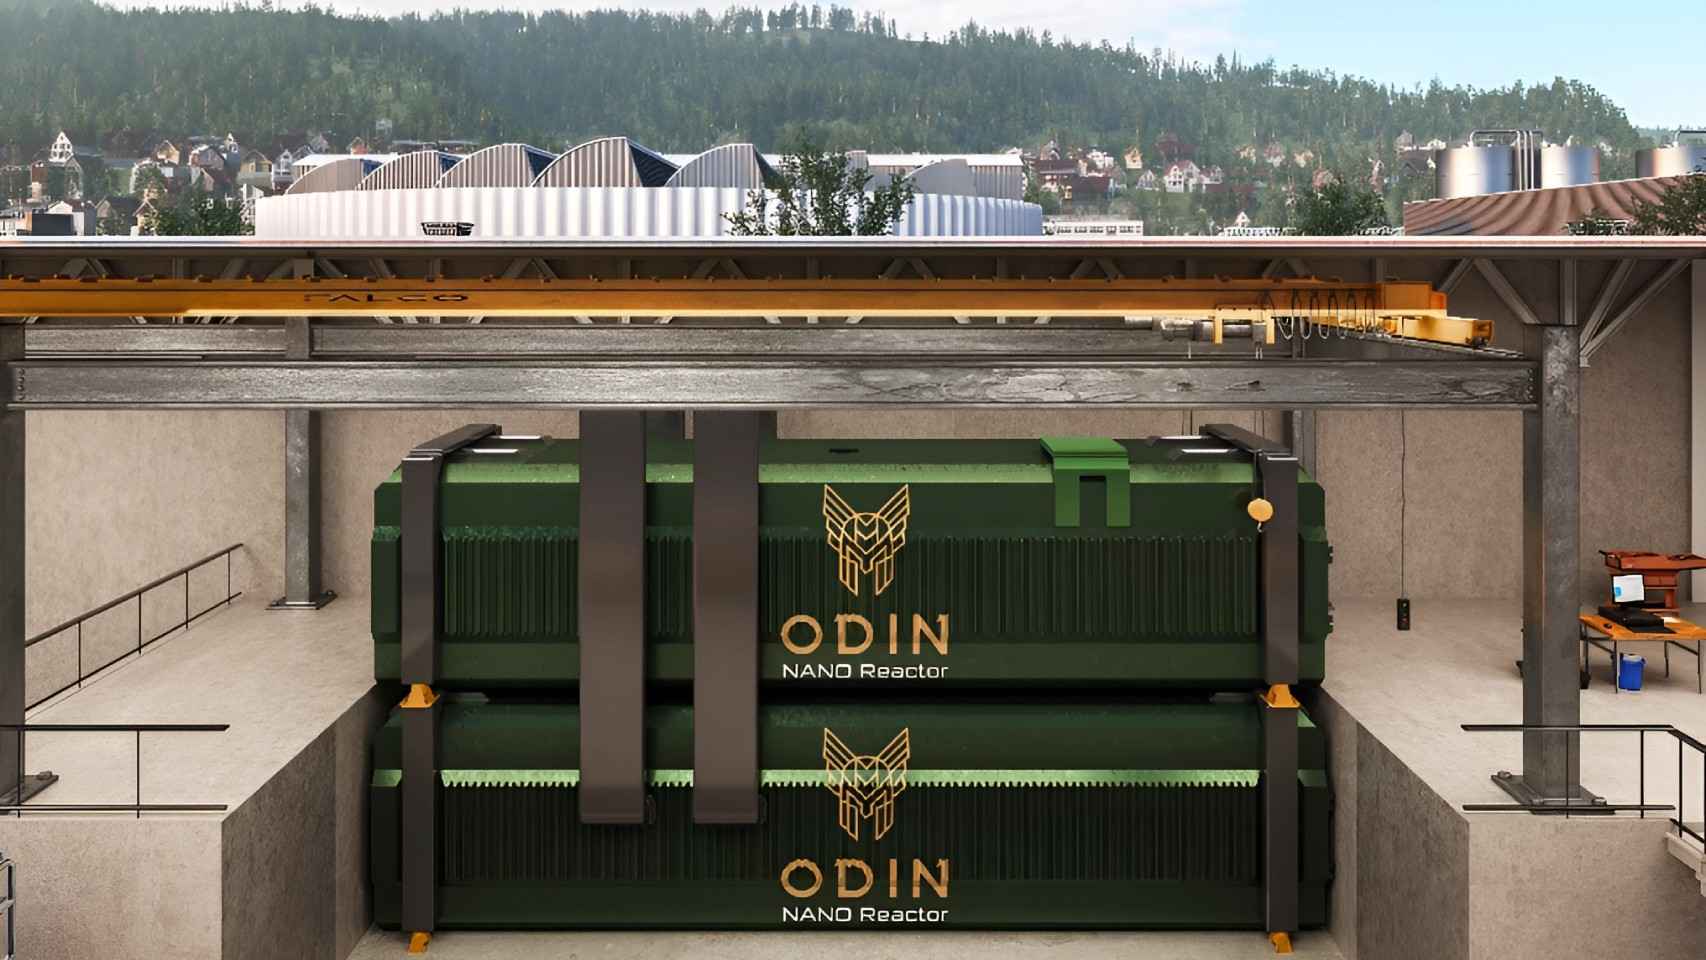 Diseño del microrreactor nuclear Odin instalado bajo tierra